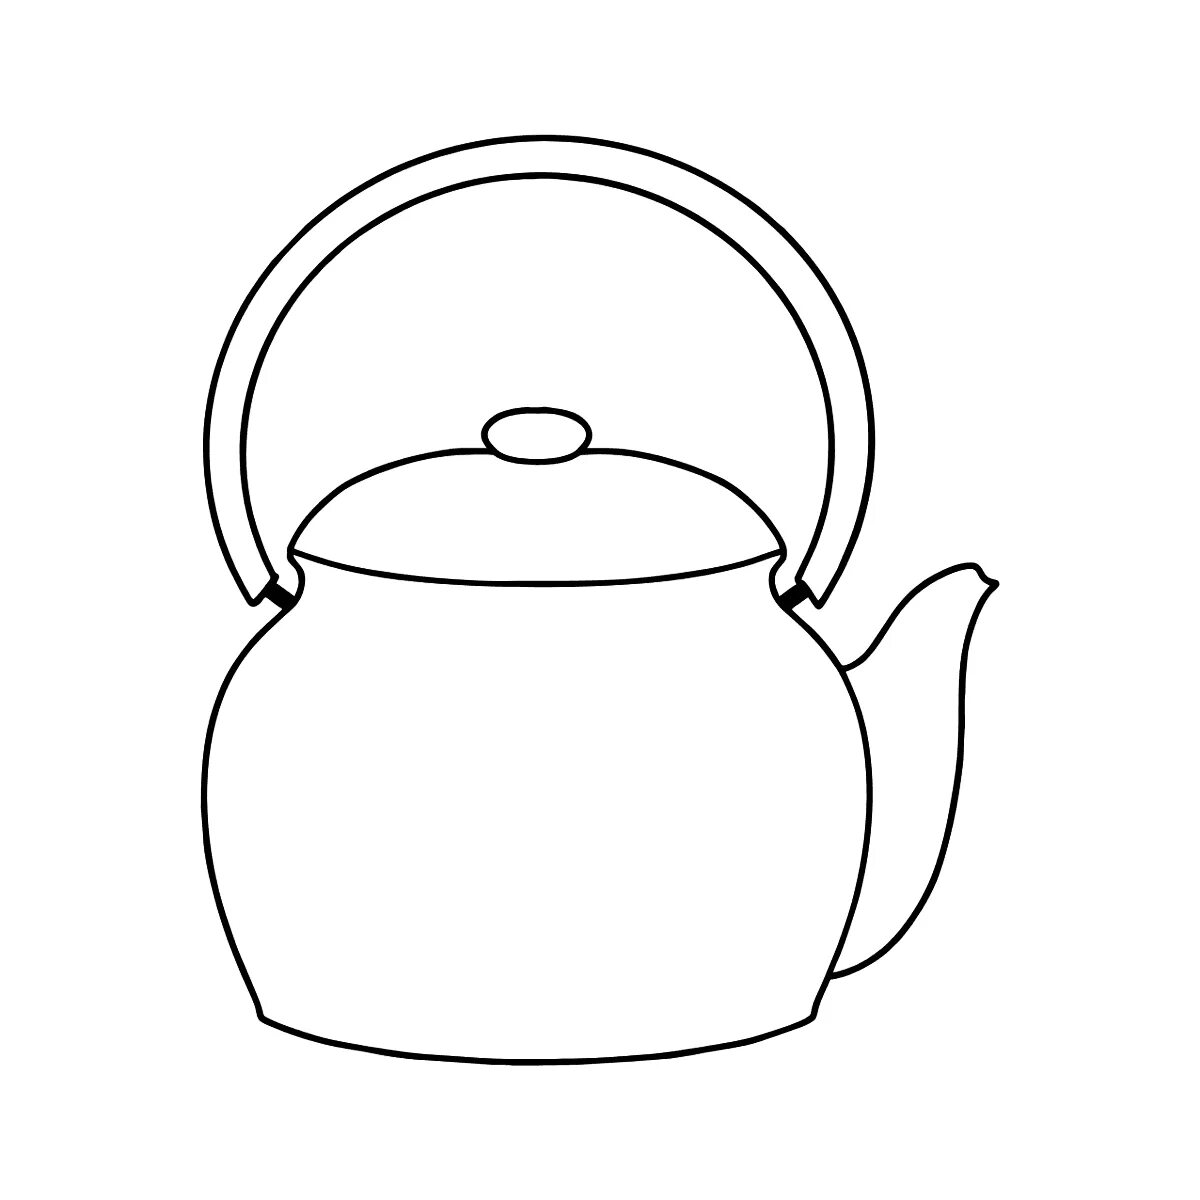 Красивая раскраска чайник для малышей 3-4 лет